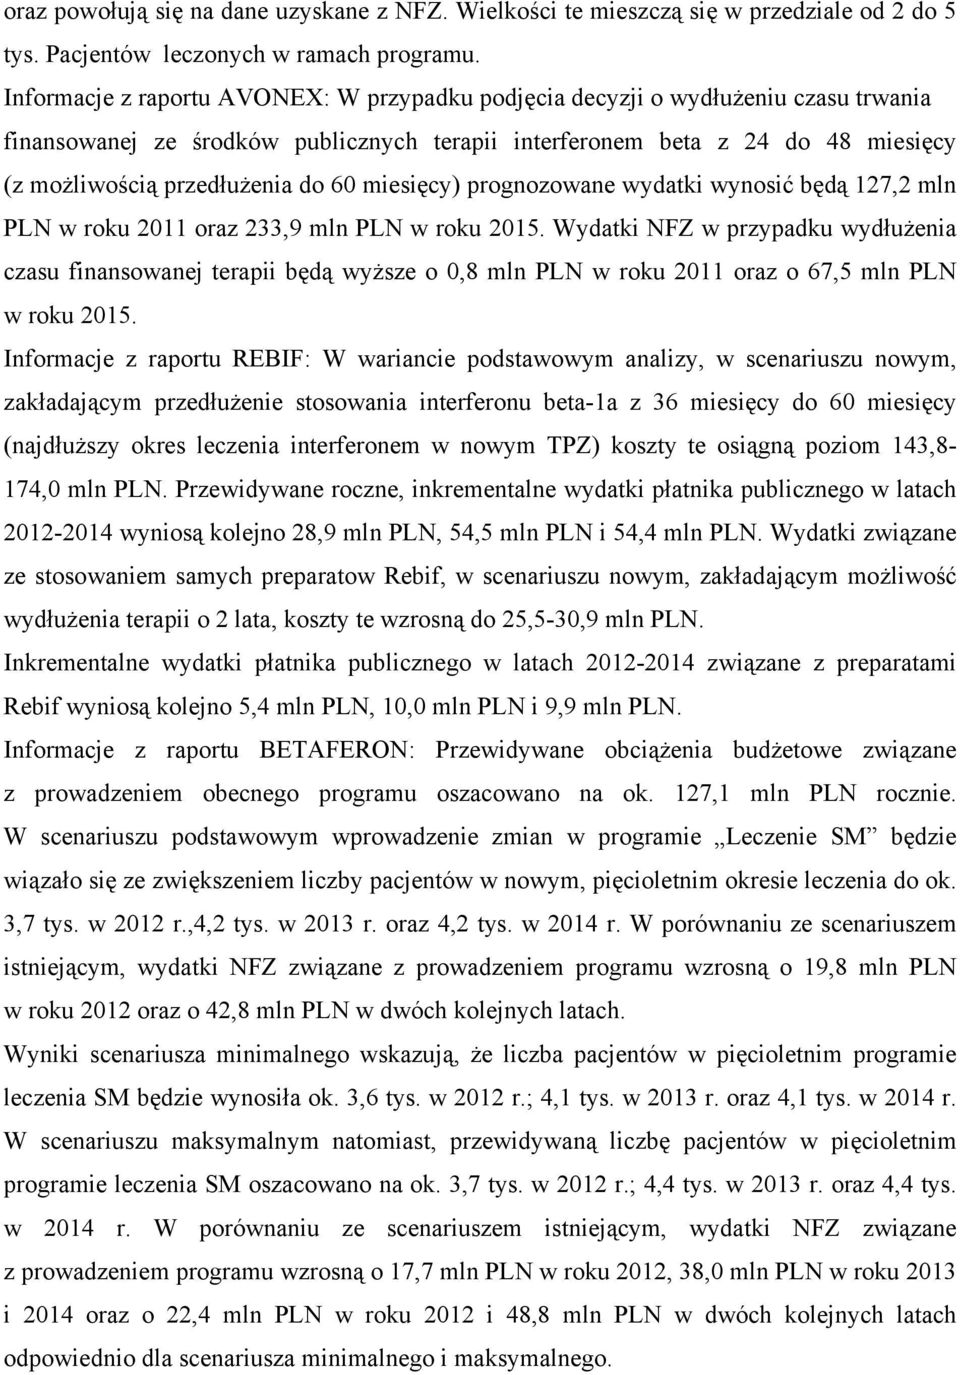 60 miesięcy) prognozowane wydatki wynosić będą 127,2 mln PLN w roku 2011 oraz 233,9 mln PLN w roku 2015.